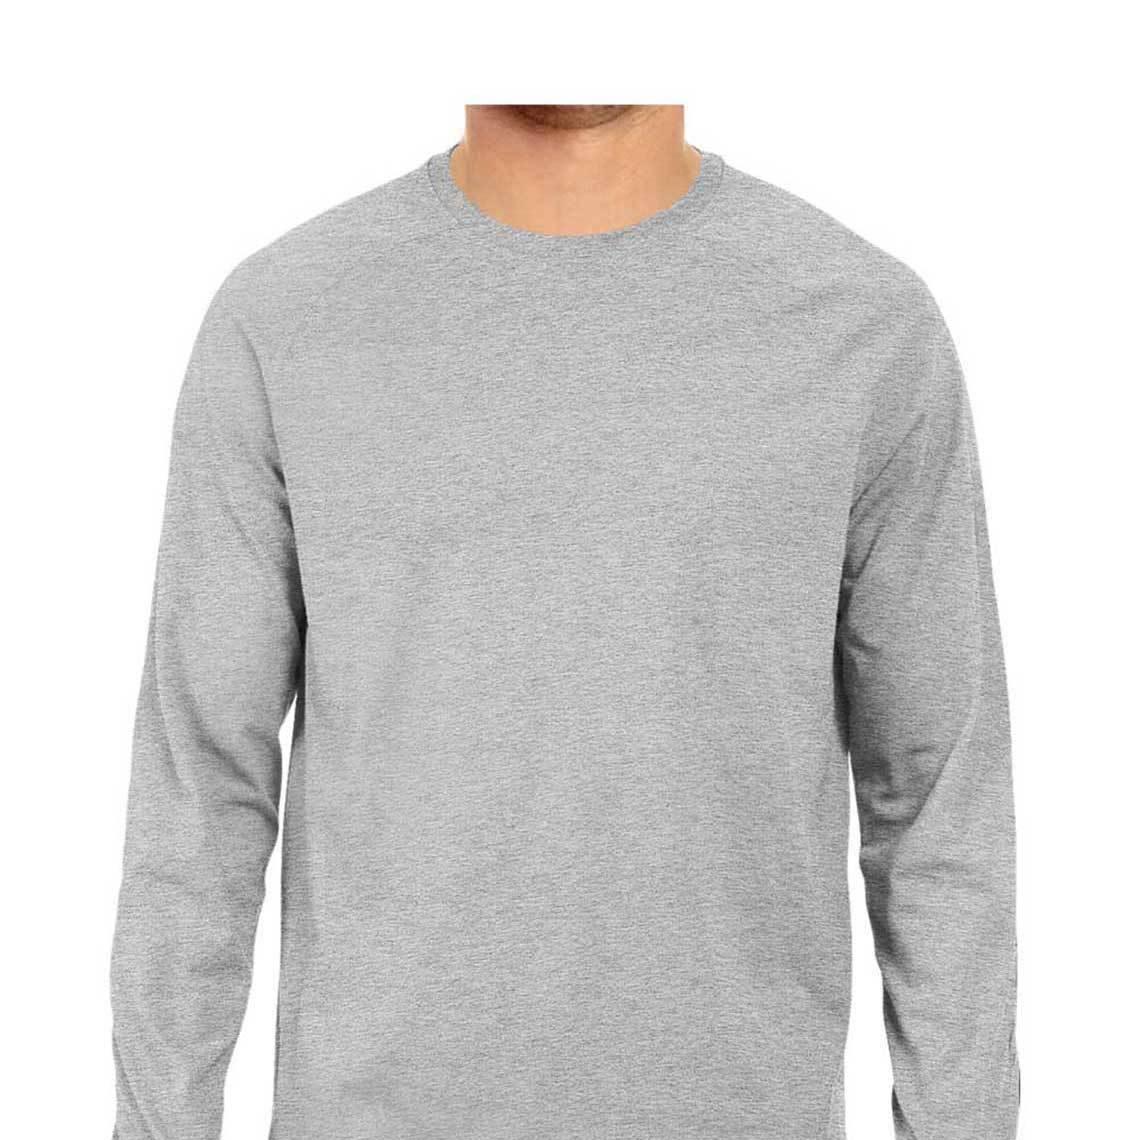 Dealsplant Full Sleeve Round Neck Plain T-Shirt for Men-Clothing-dealsplant